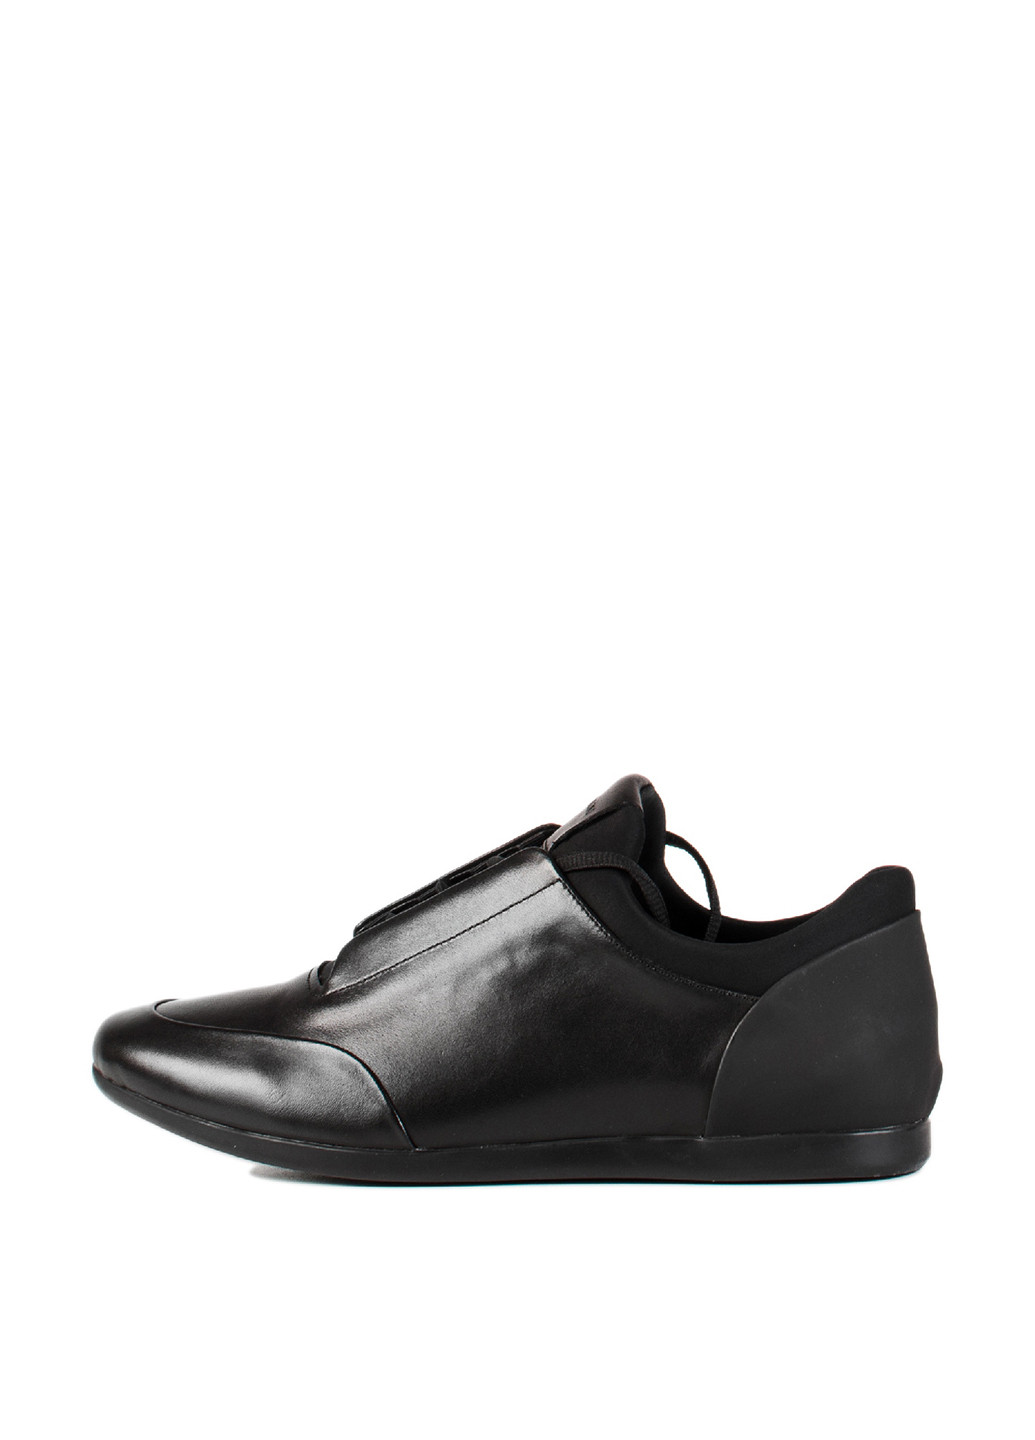 Черные спортивные туфли Carlo Pazolini на шнурках